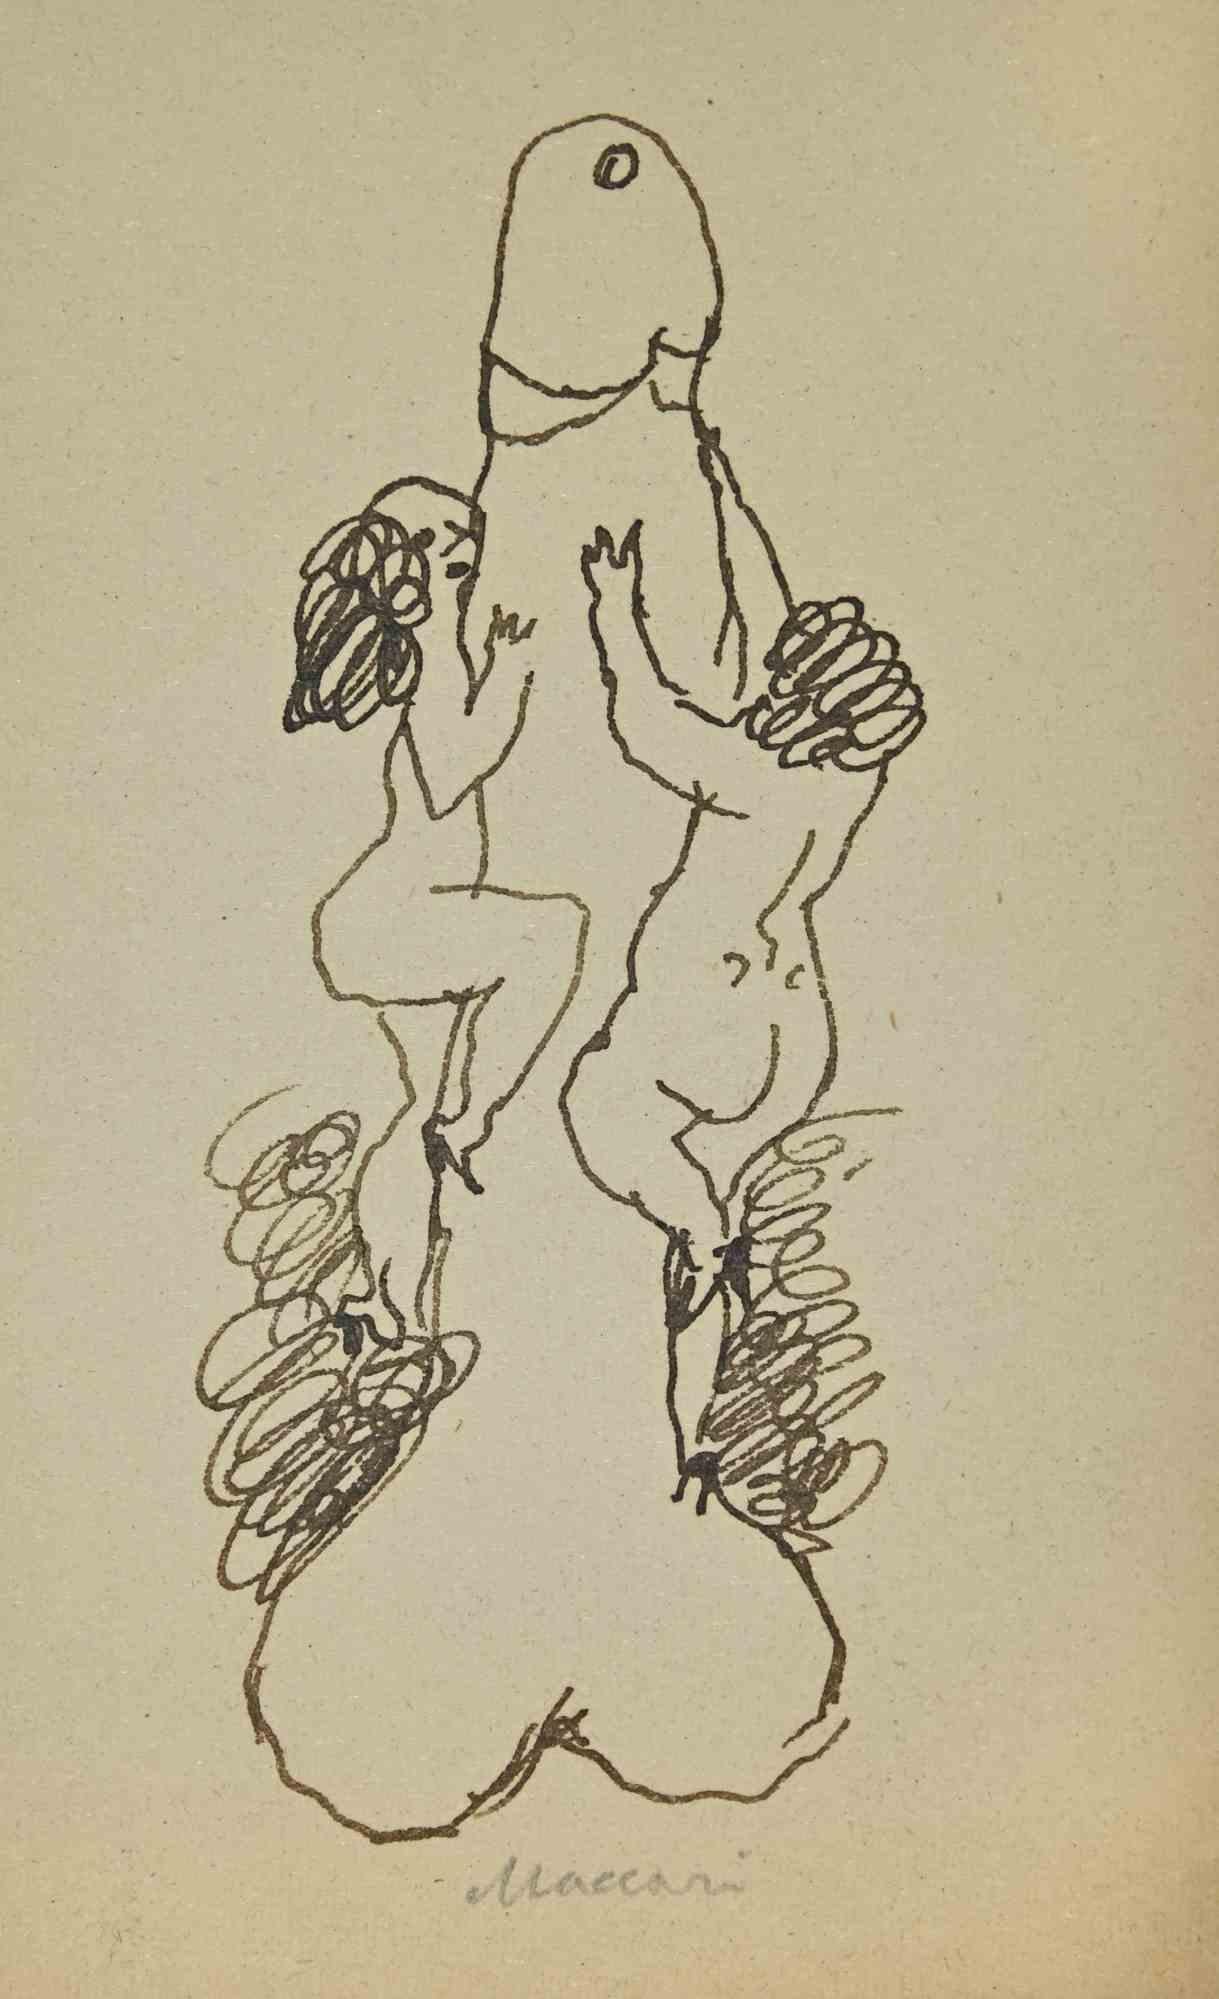 The Climbers - Zeichnung von Mino Maccari - 1960 ca.